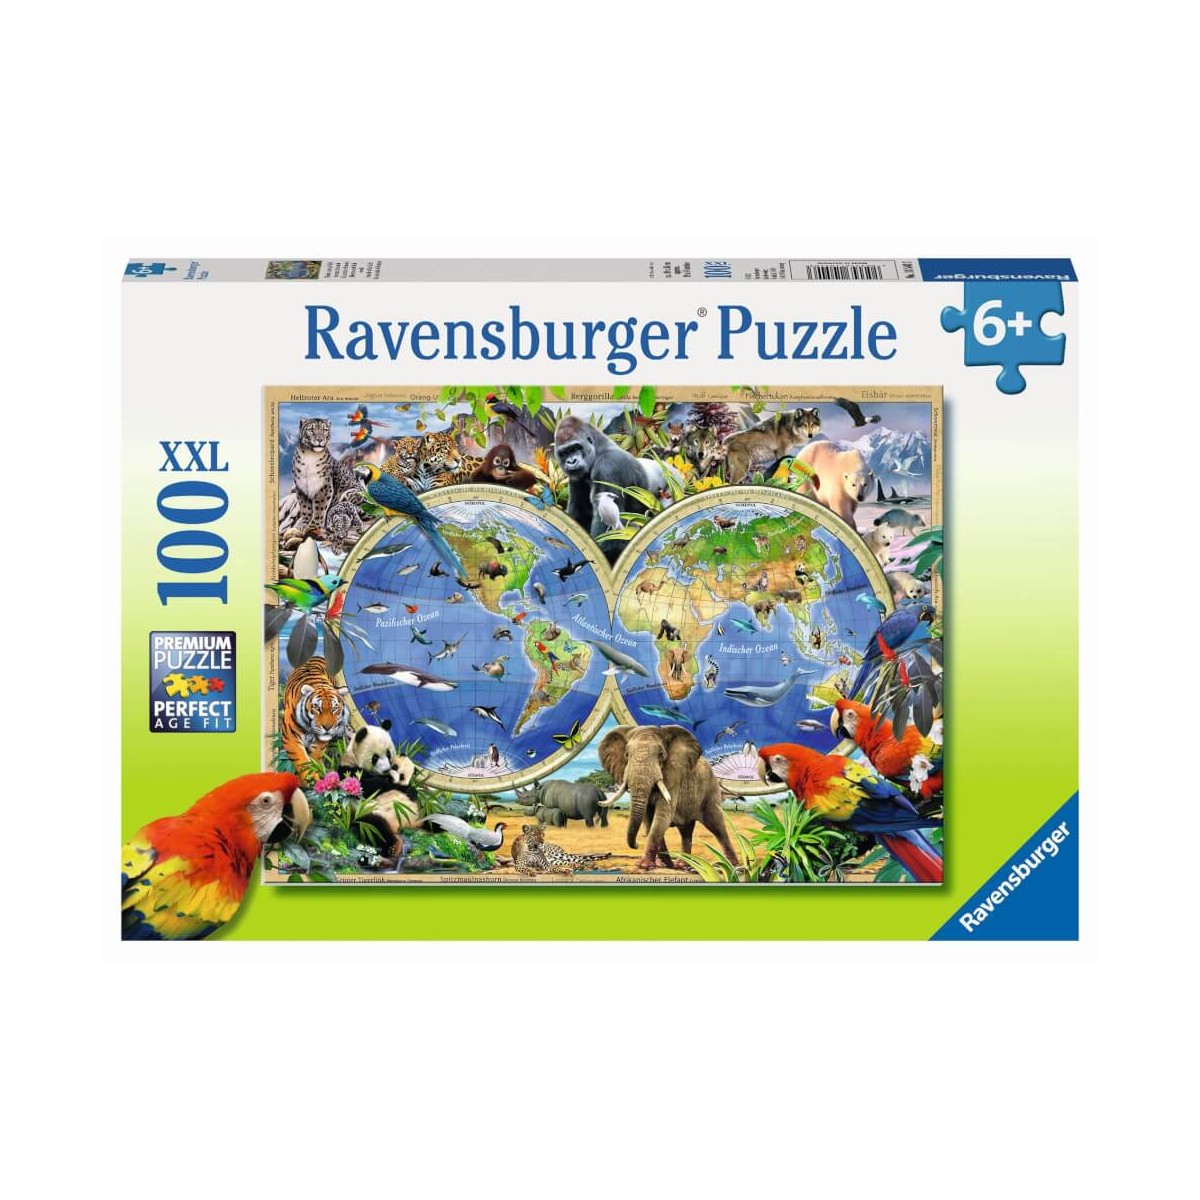 Spielwaren Krömer - Ravensburger Puzzle - Tierisch um die Welt, 100 XXL- Teile - EAN: 4005556105403